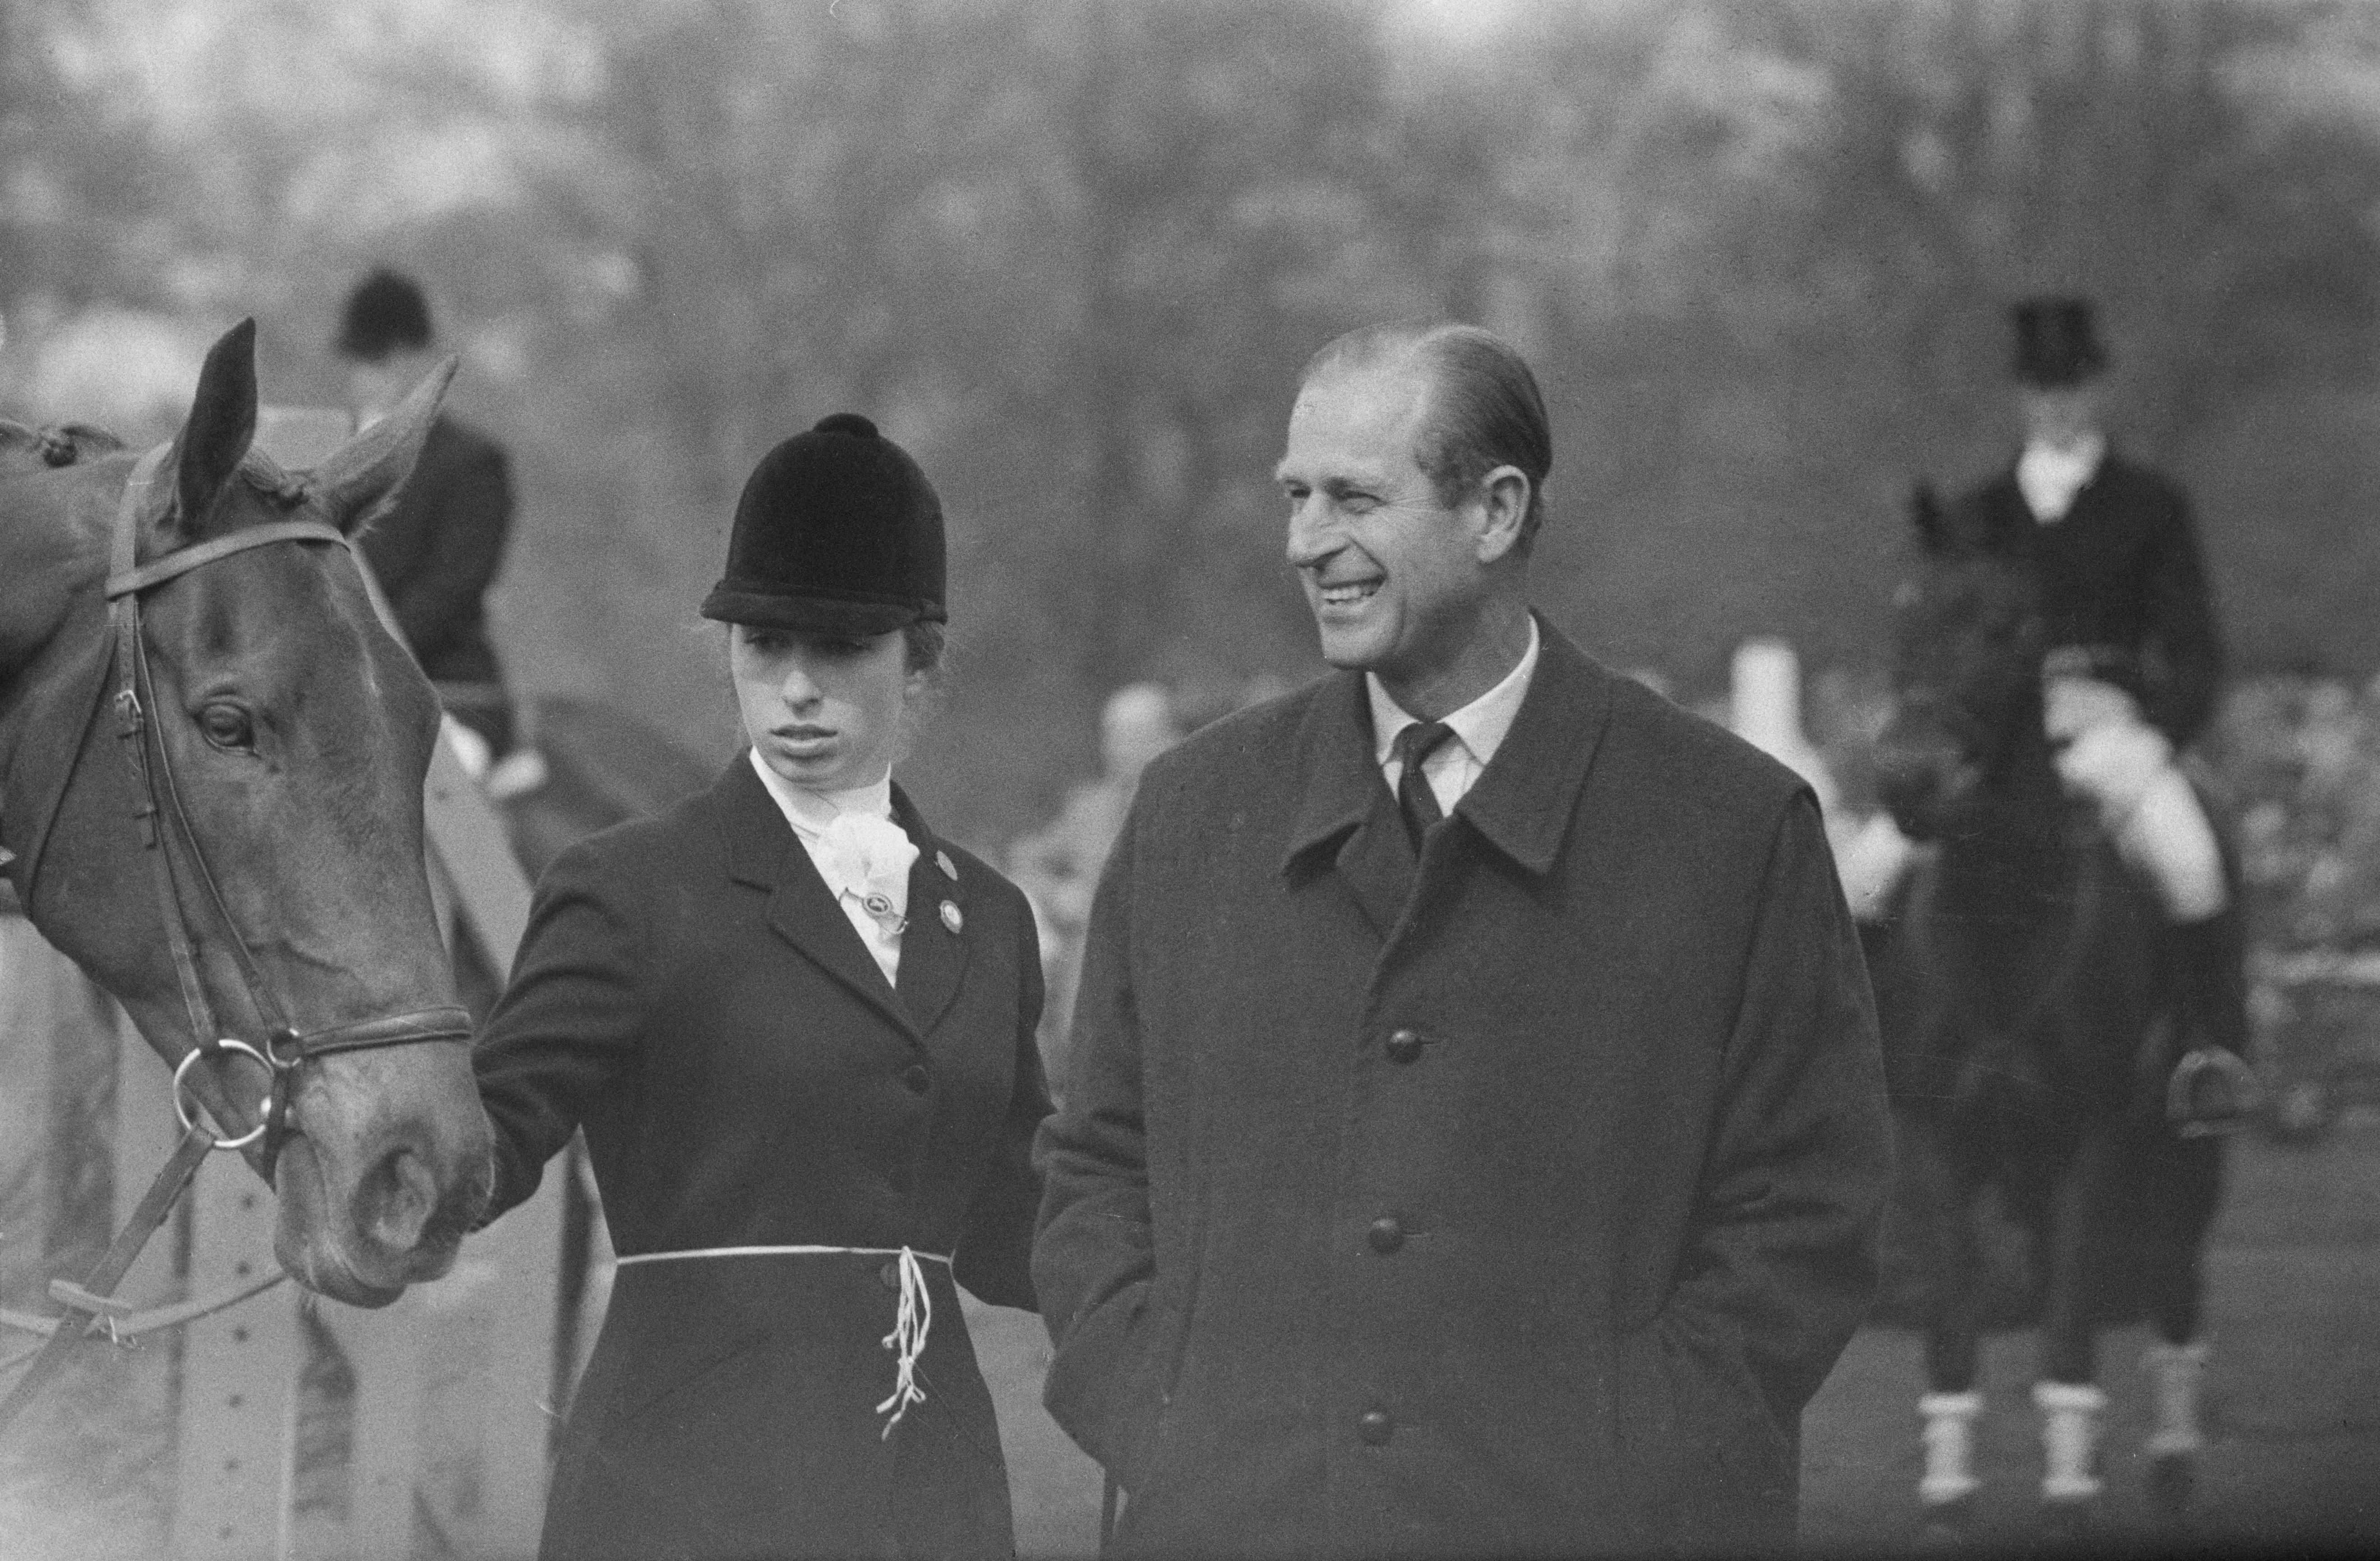 Ducele de Edinburgh i-a transmis pasiunea pentru sport și fiicei sale, Anna. În fotografia din 26 aprilie 1971, Prințesa Anna este surprinsă în timpul unui concurs de echitație alături de tatăl ei